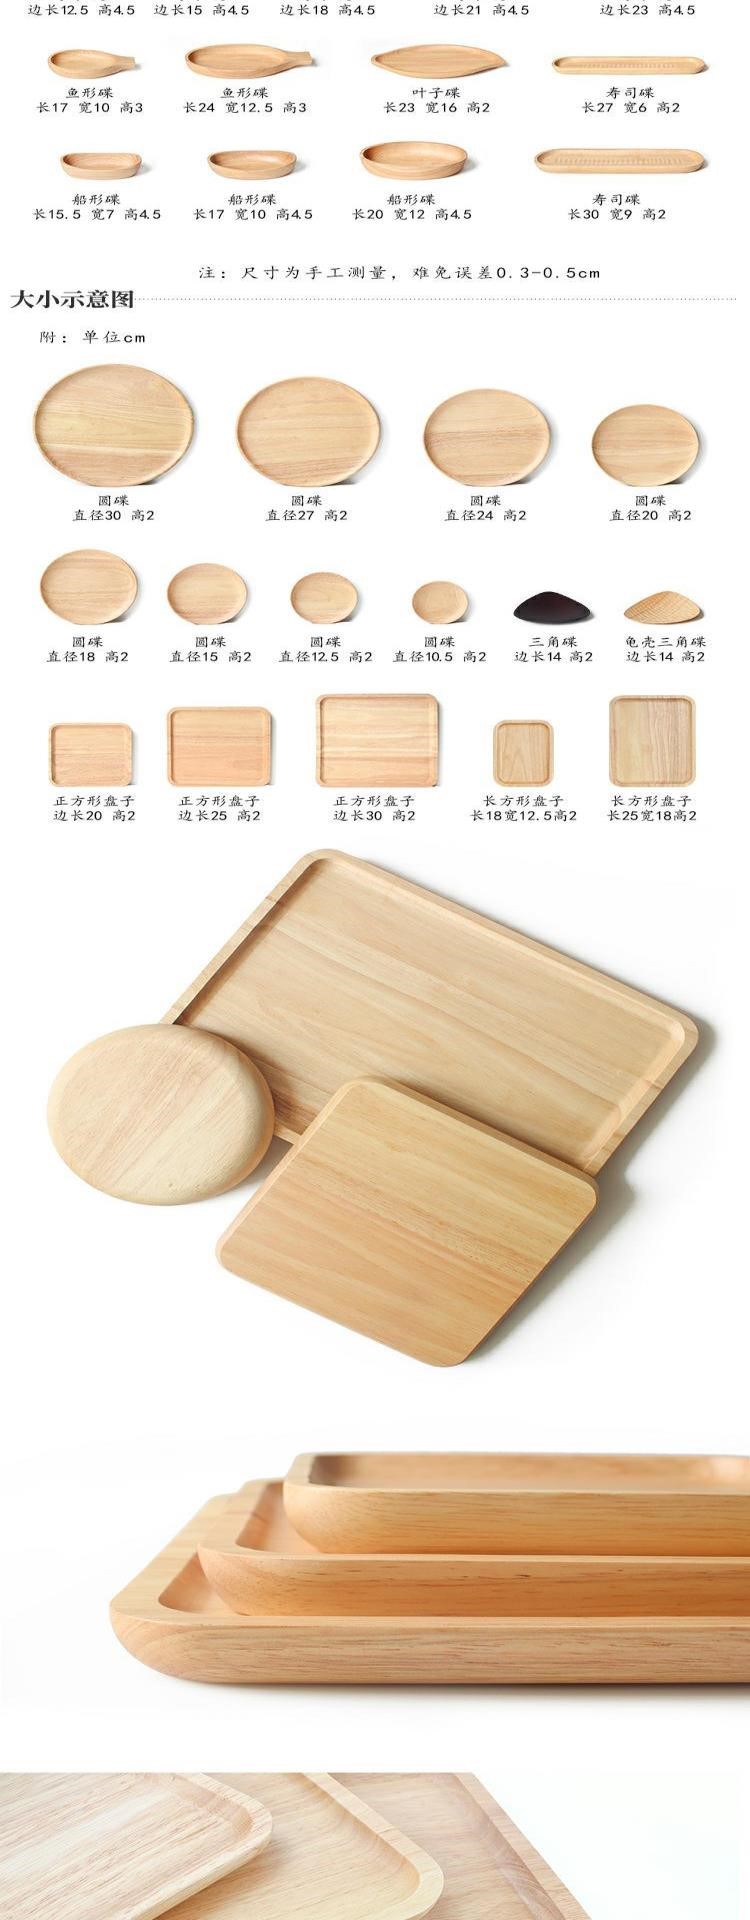 Khay gỗ kiểu nhật, đĩa chữ nhật, khay trà gỗ đặc, đĩa gỗ, đĩa gỗ, đĩa gỗ, bộ đồ ăn gỗ, chén đĩa nhỏ - Tấm